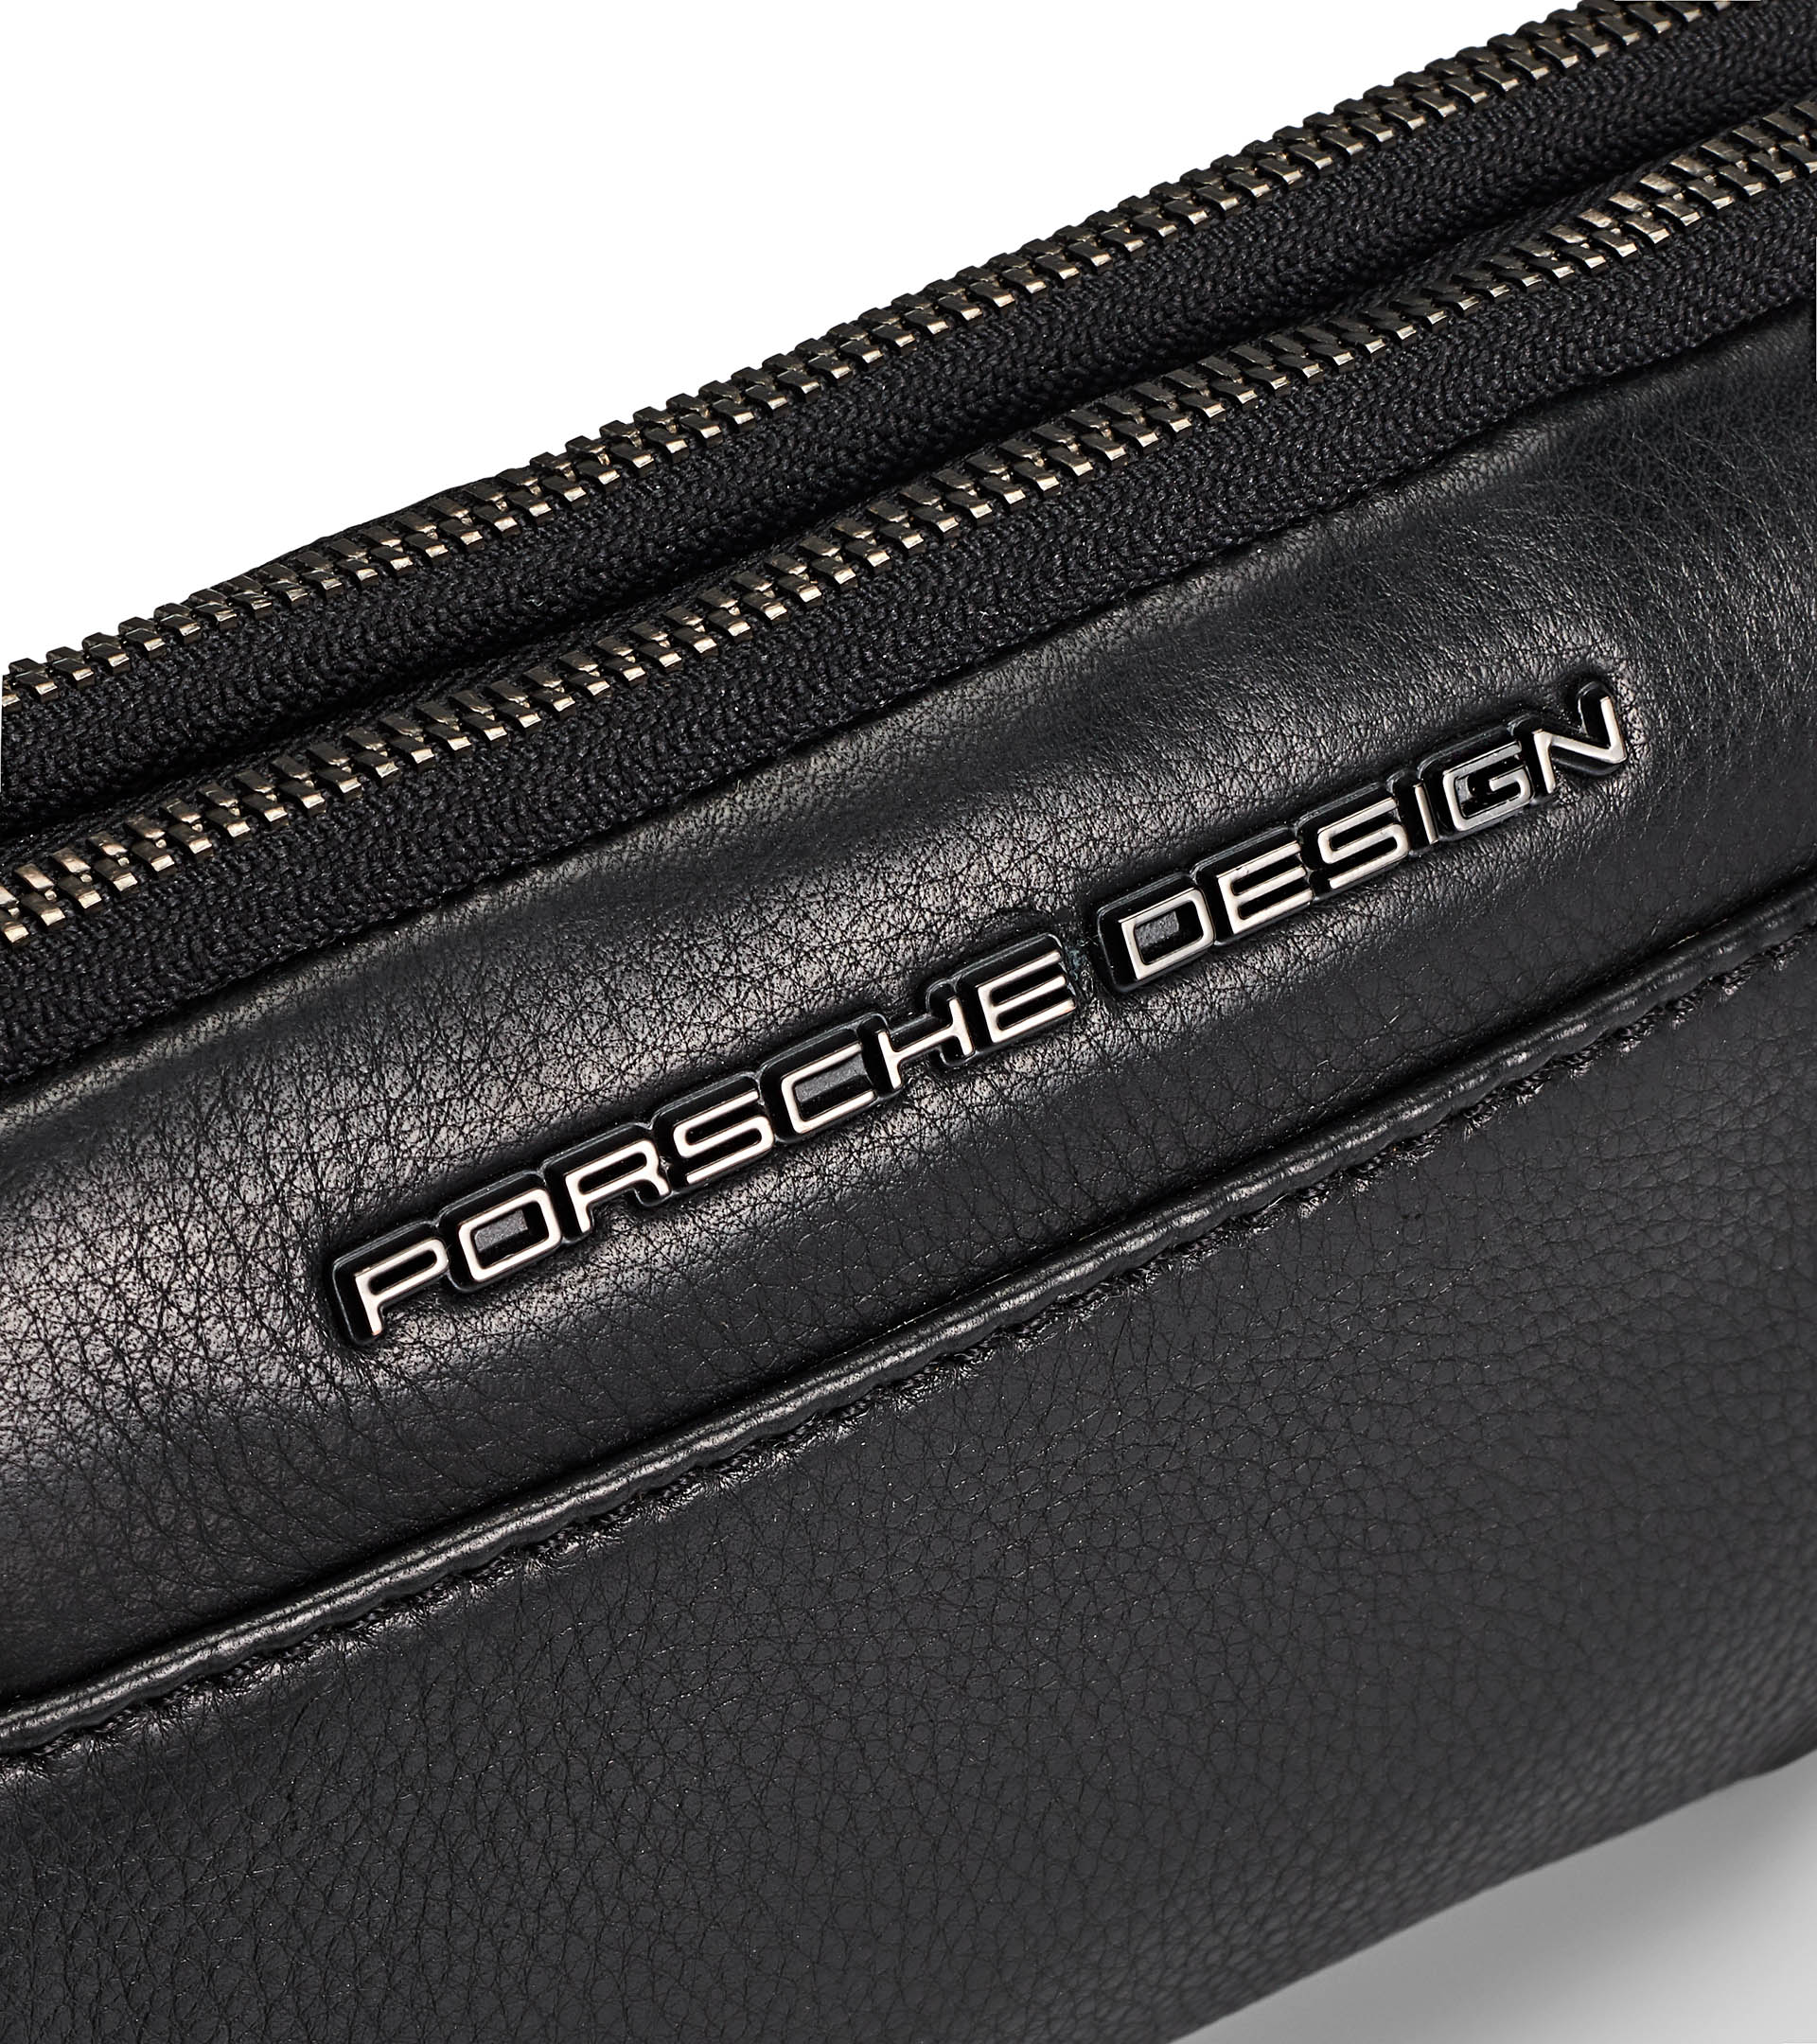 Roadster Leather Travel Pouch - Men's Shoulder Bag - Practical